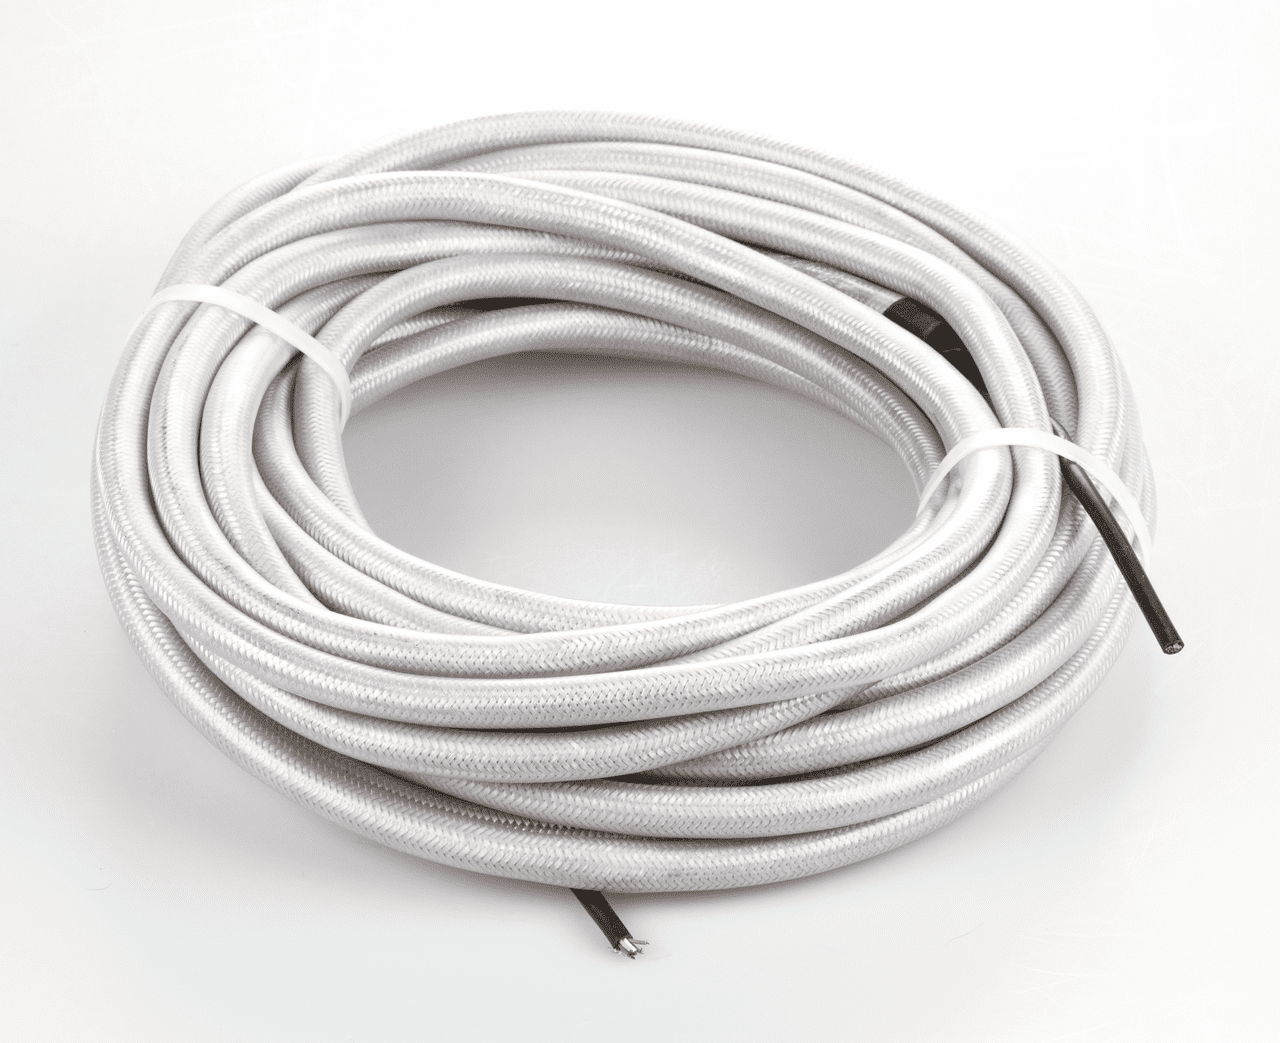 Aufgerolltes weißes Kabel auf weißem Hintergrund. Das Kabel ist mit zwei weißen Kabelbinder zusammengehalten.